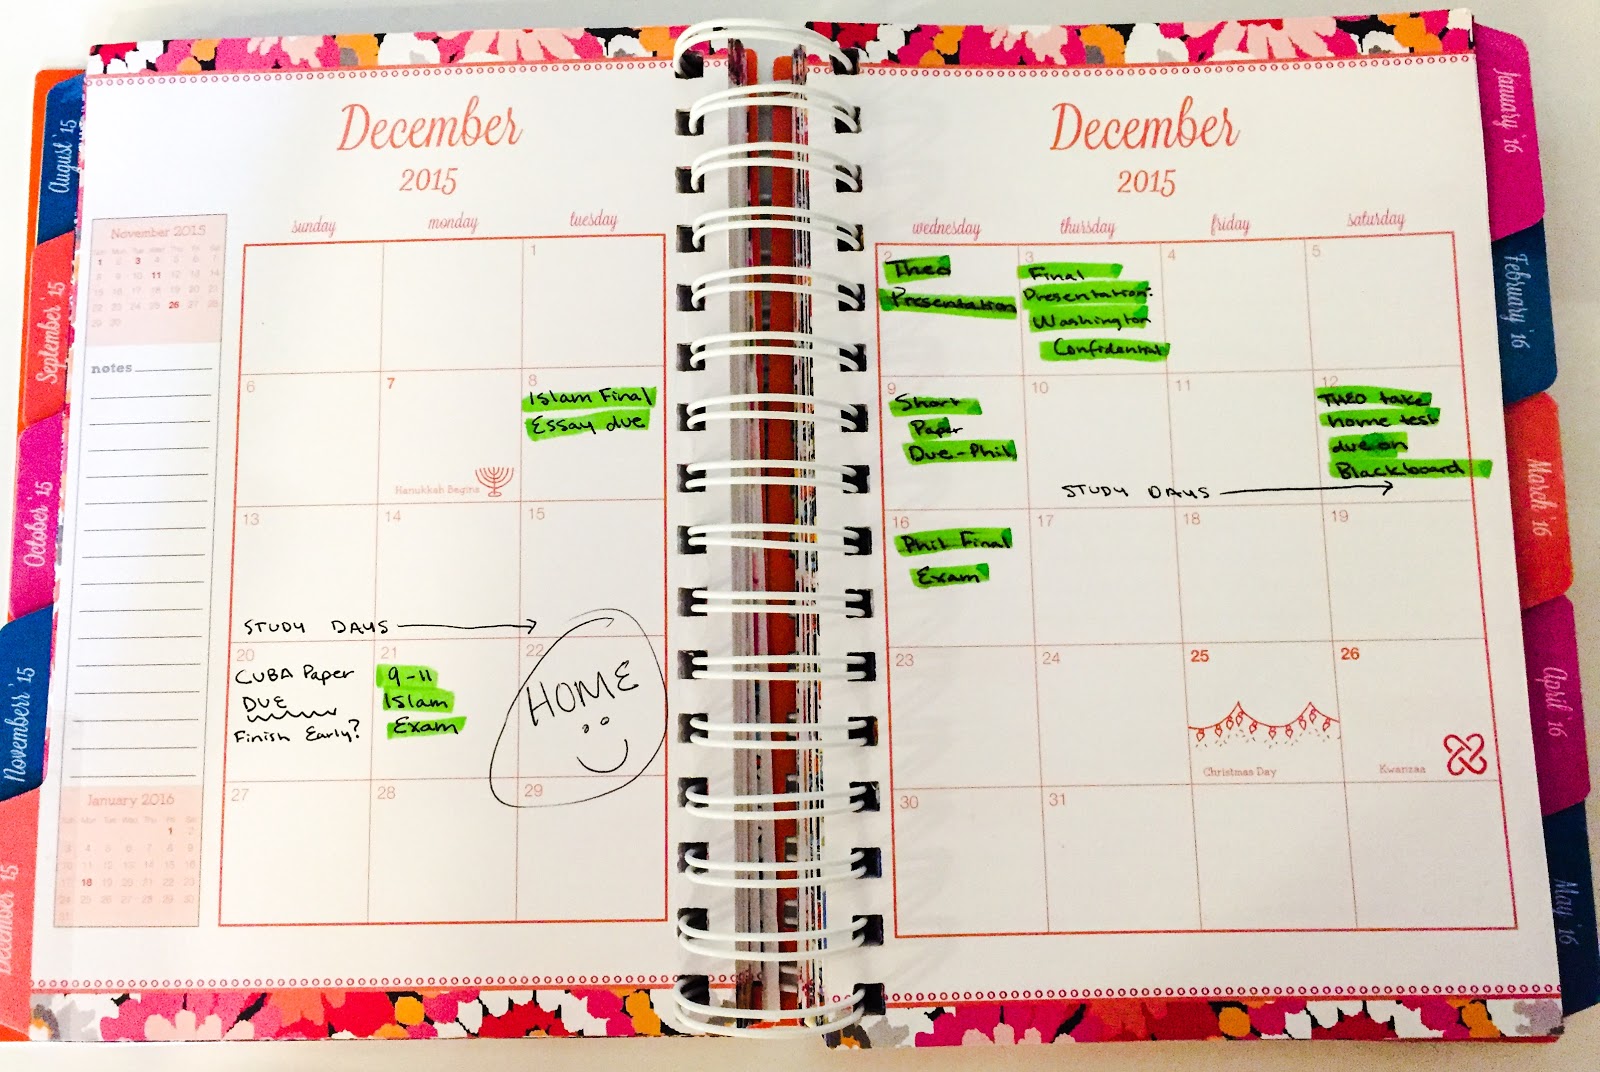 An open notebook showing a full calendar